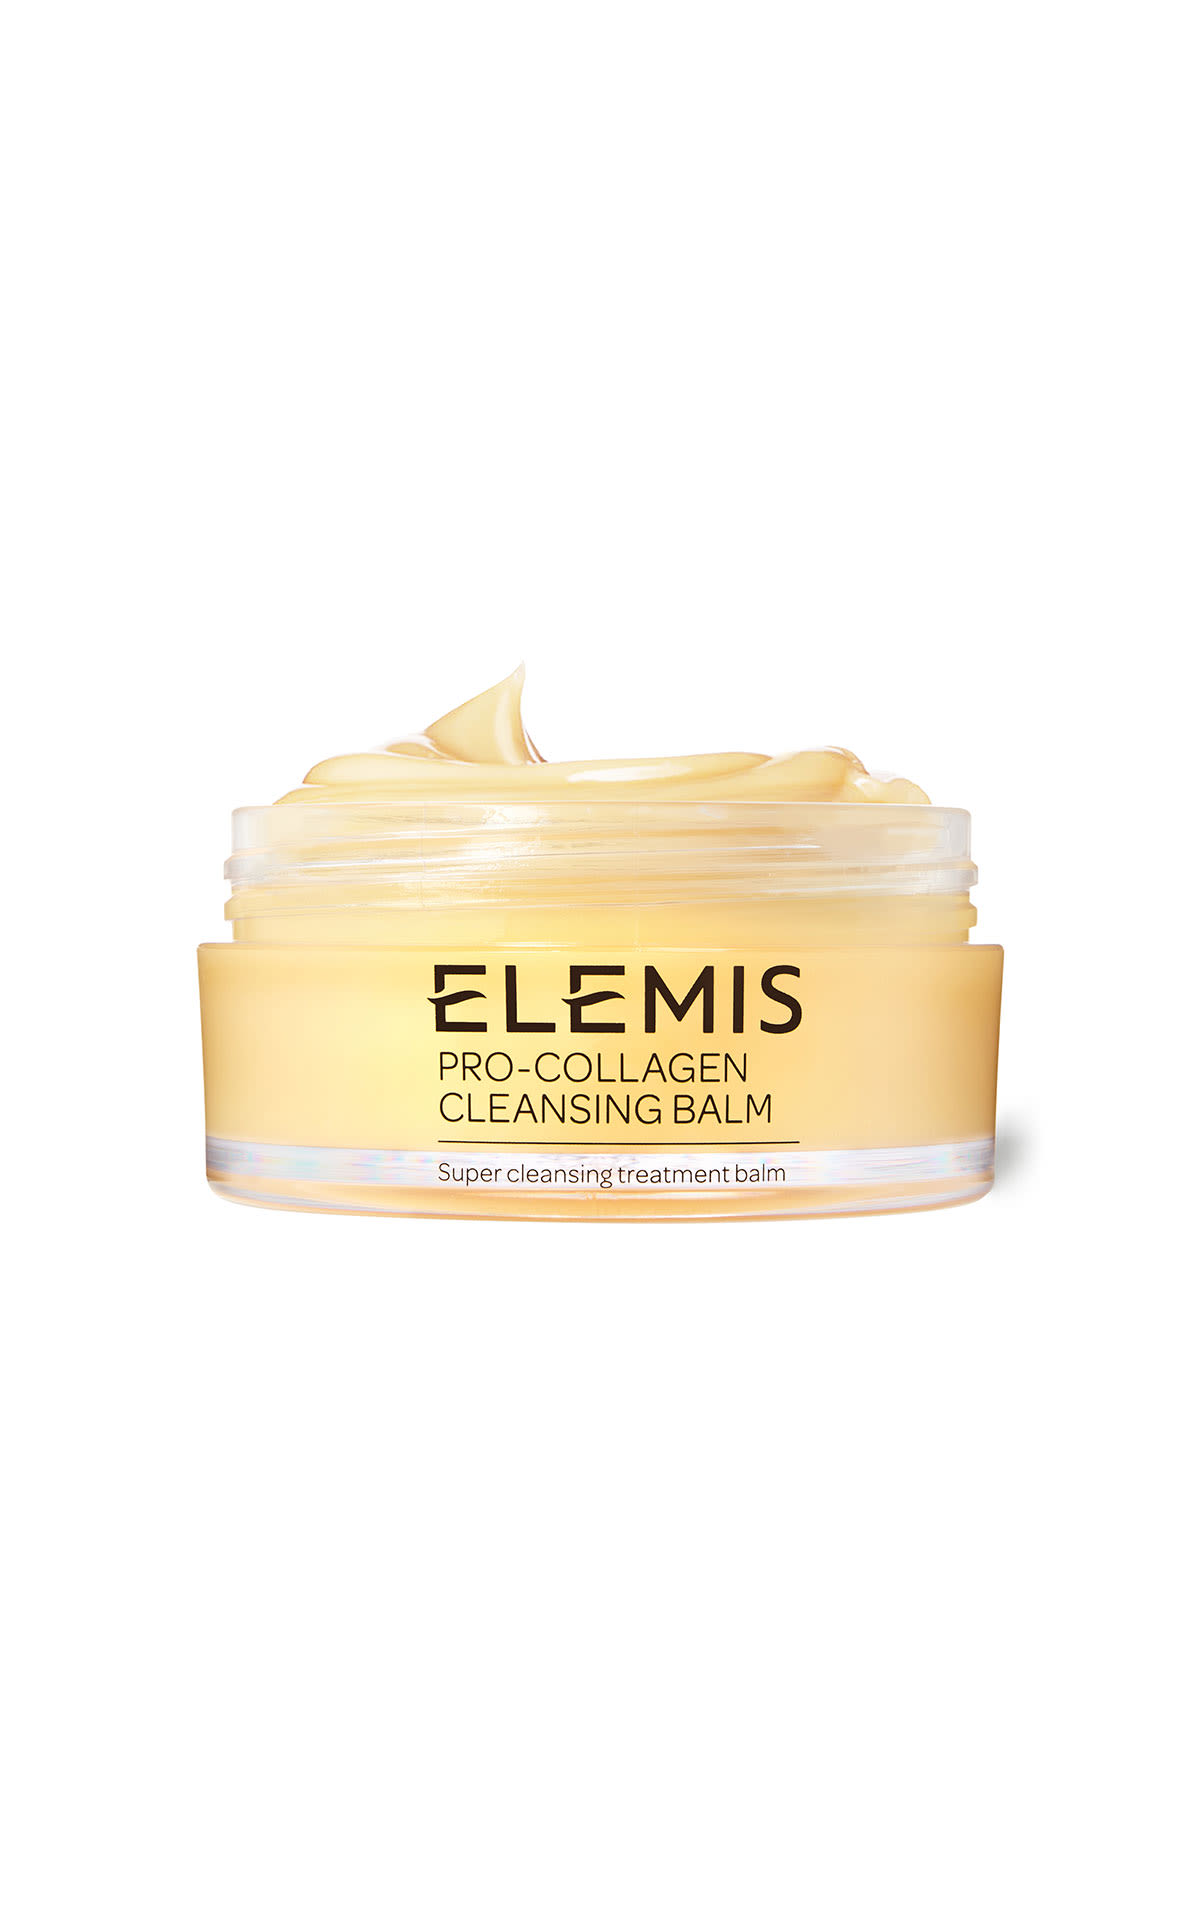 ELEMIS Pro-Collagen Cleansing balm 100g from Bicester Village